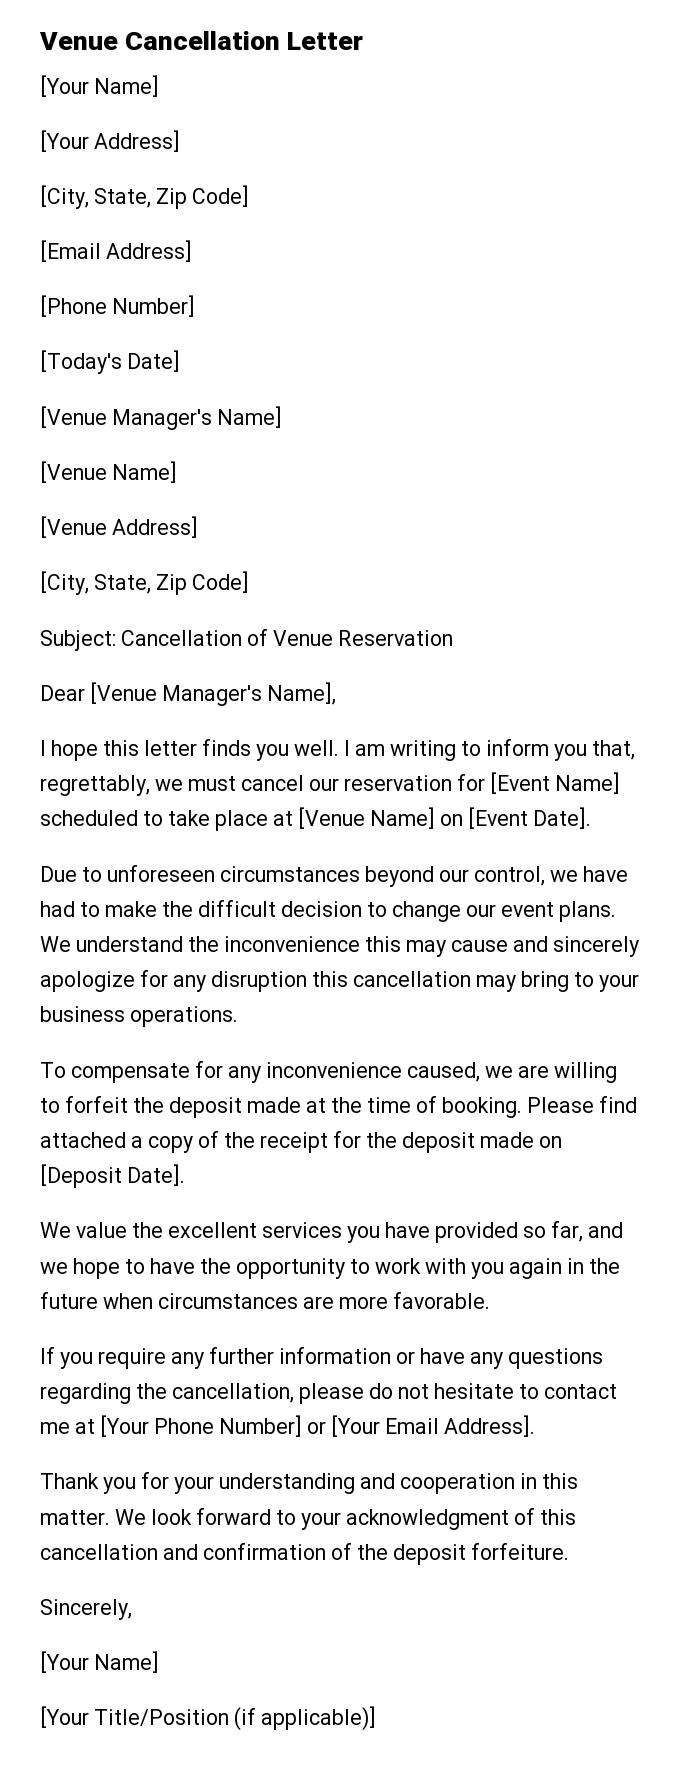 Venue Cancellation Letter